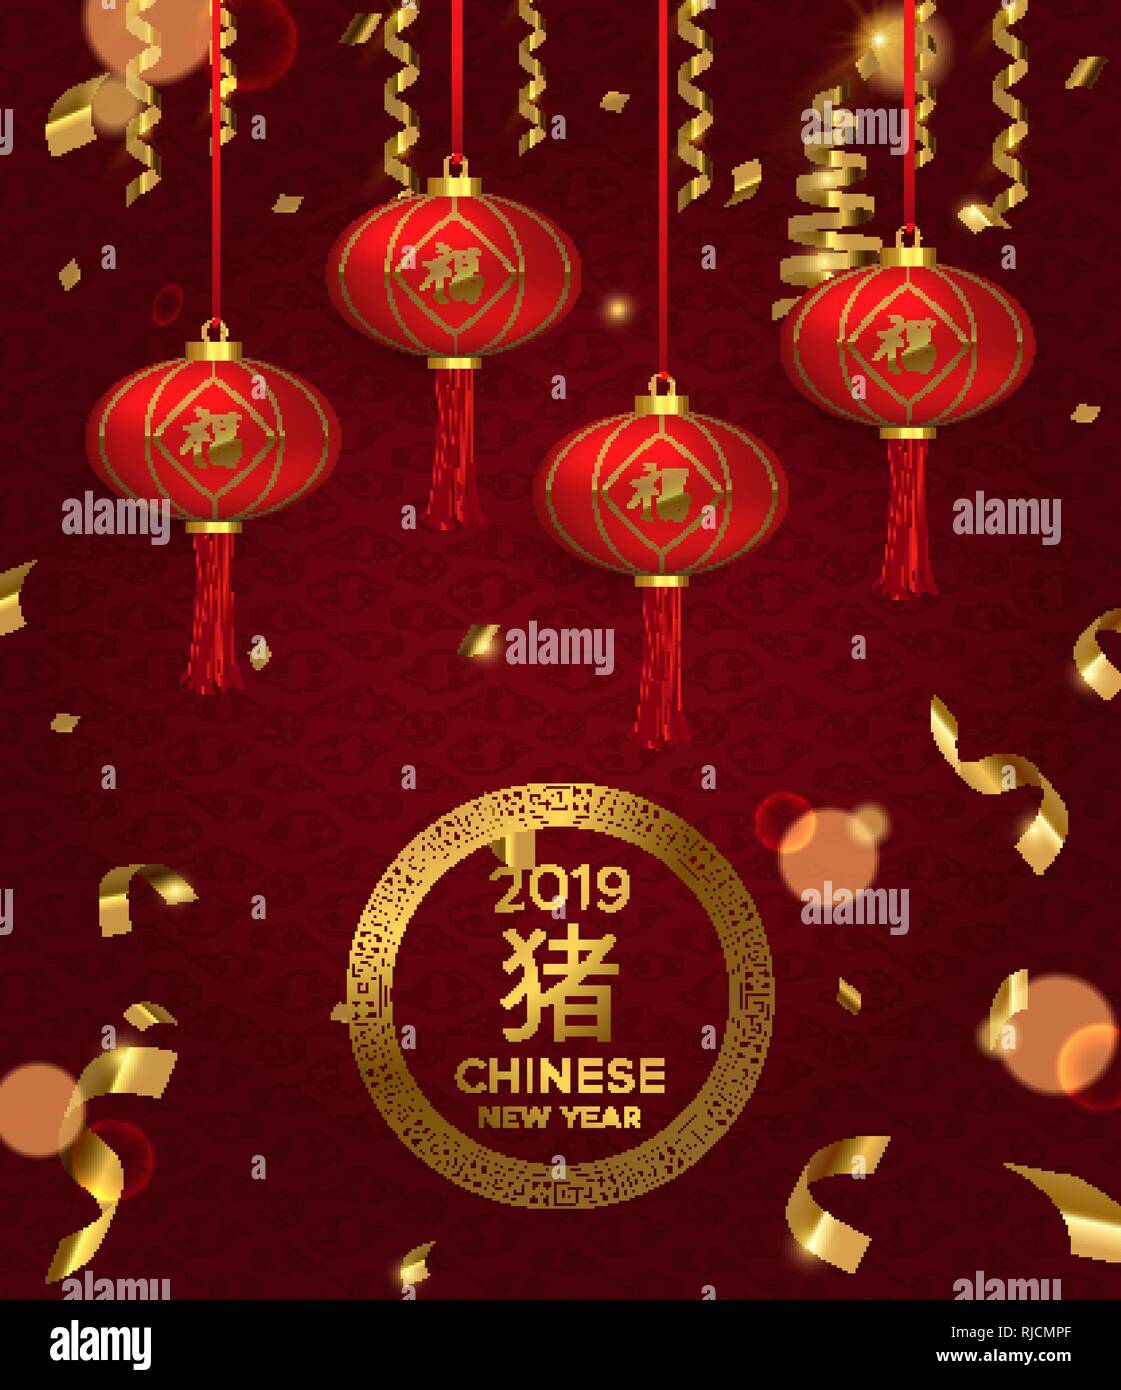 Chinesisches Neues Jahr des Schweins 2019 Abbildung. Roter Hintergrund mit herkömmlichen 3D-asiatische Laternen und gold Konfetti Dekoration. Stock Vektor